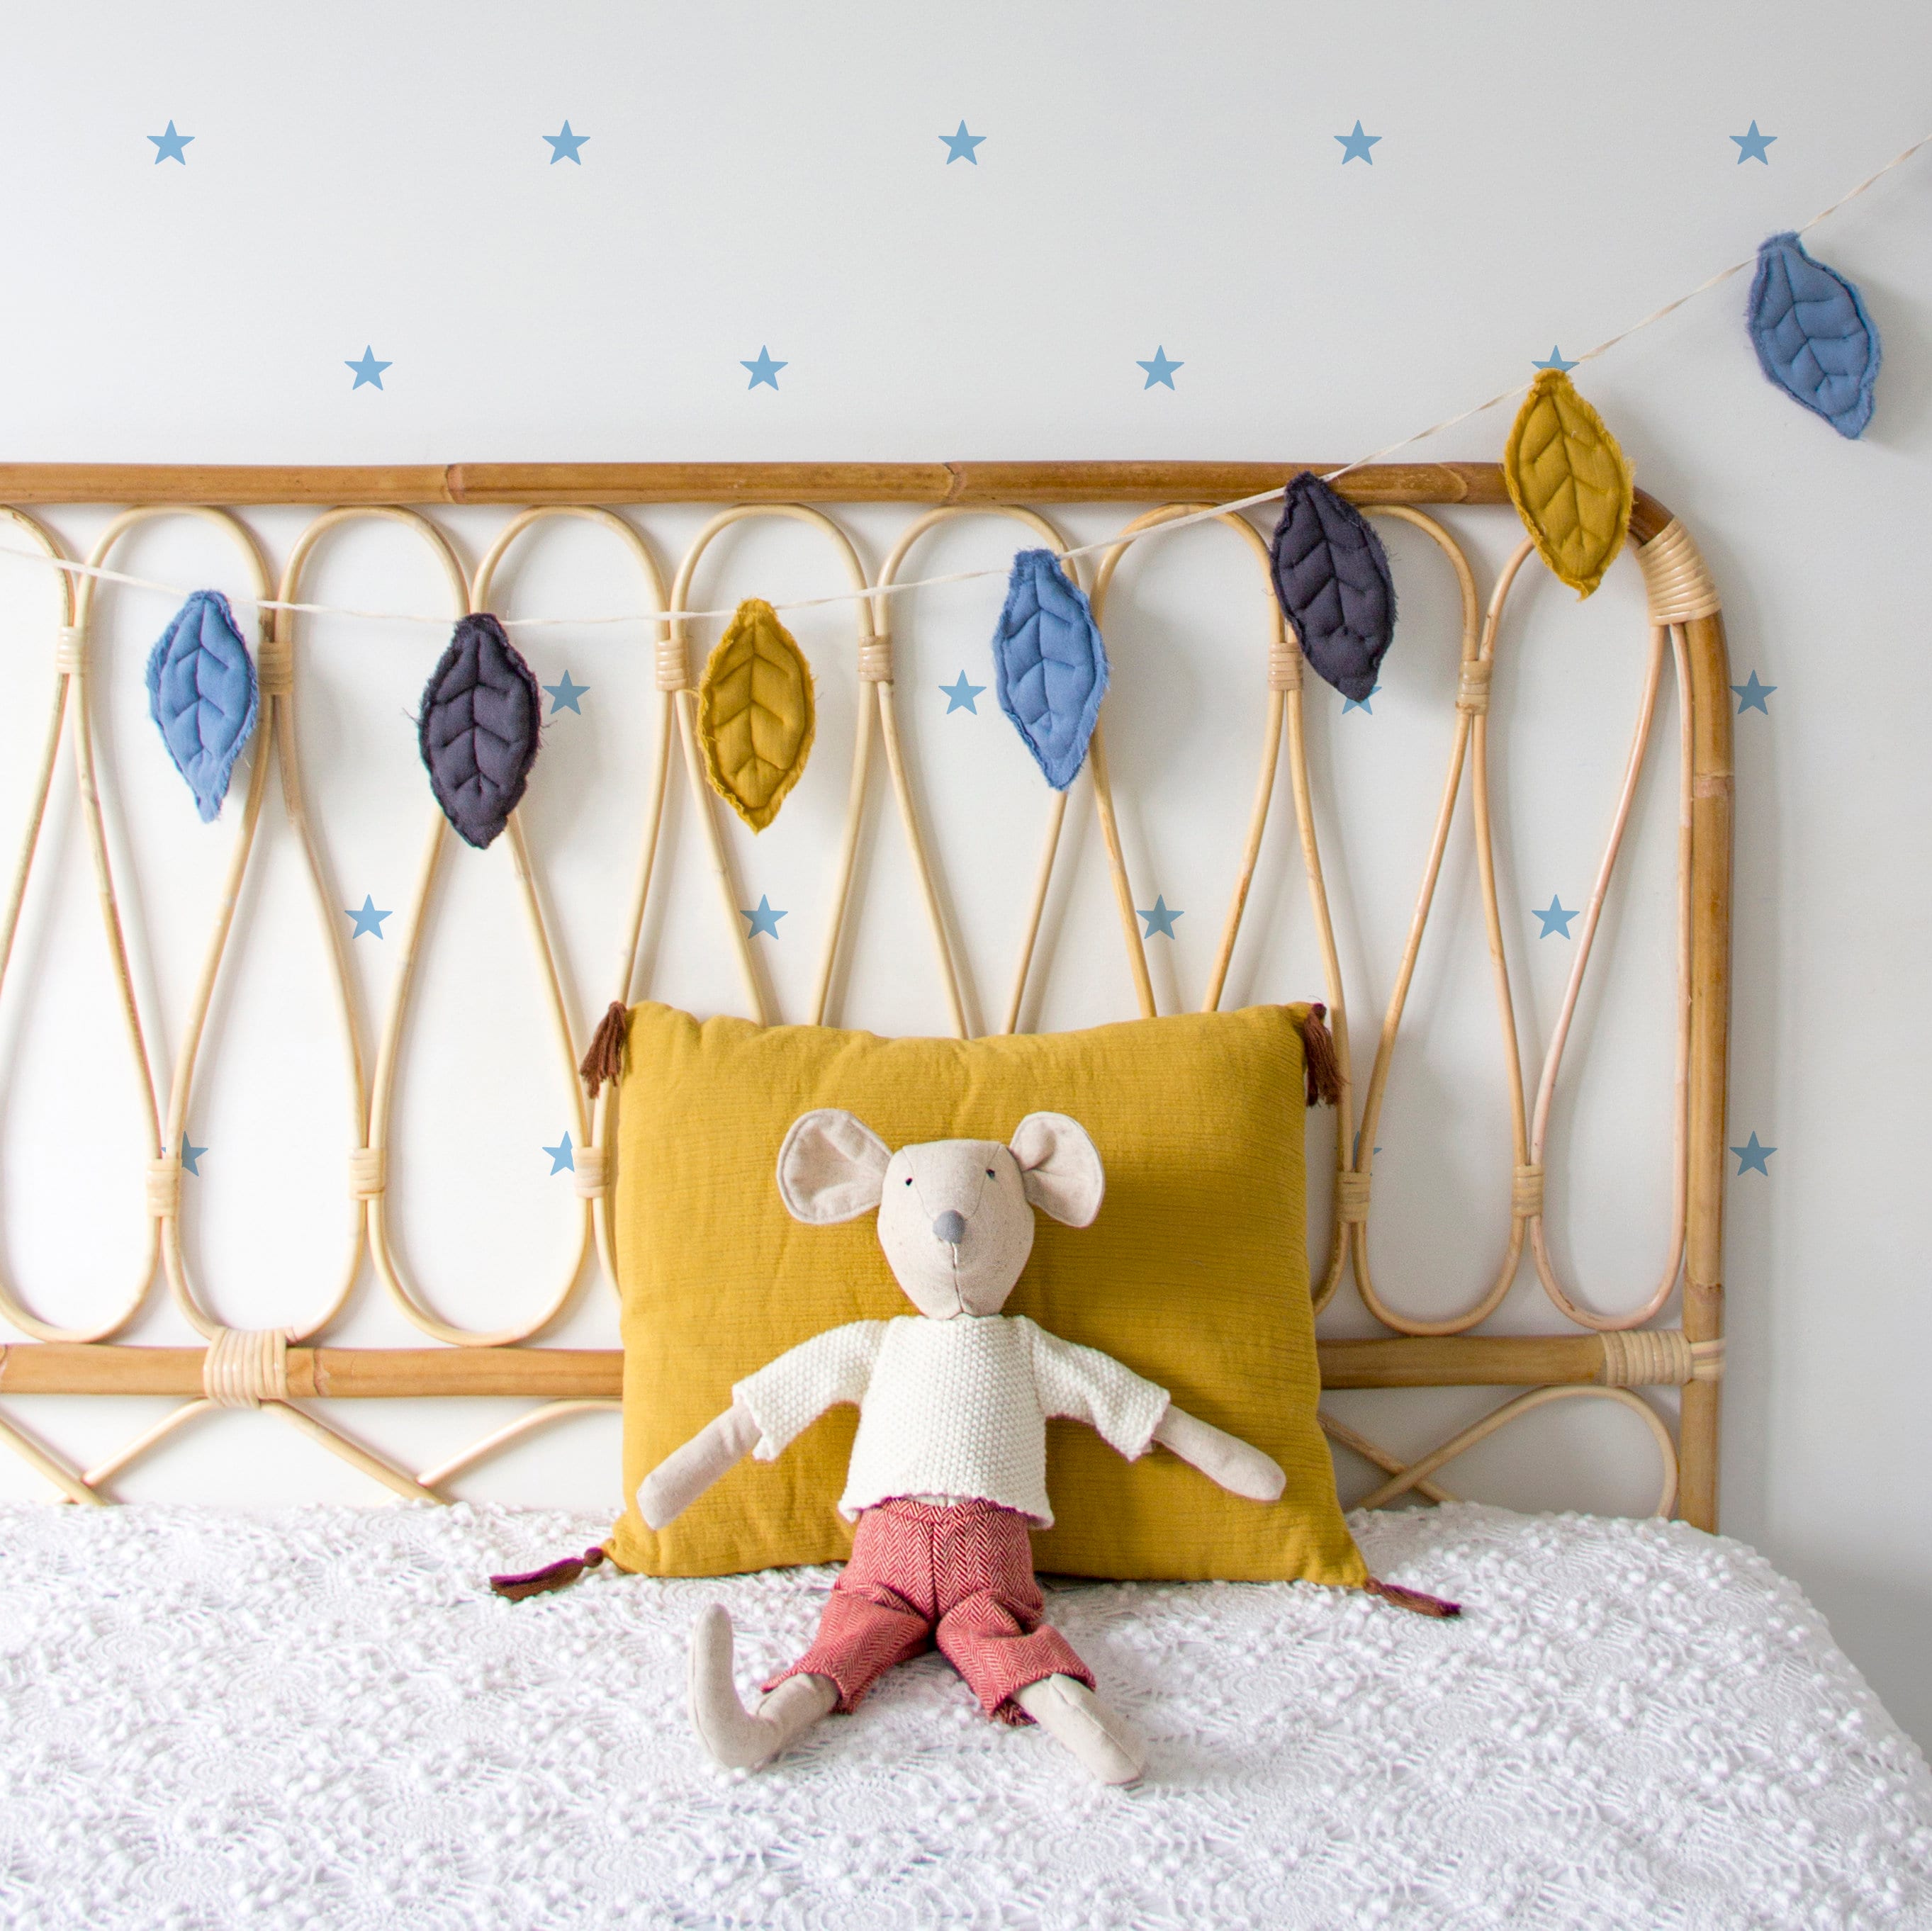  LIU- Gepolstertes Kopfteil, 3D-Wandpaneel, Kindliches  Hausform-Design, Wandschutz Und Wanddekoration Für Kinderzimmer,  Kinderzimmer, Spielzimmer, Packung Mit 5 Paneelen (Color : Blue, Size :  180cm)